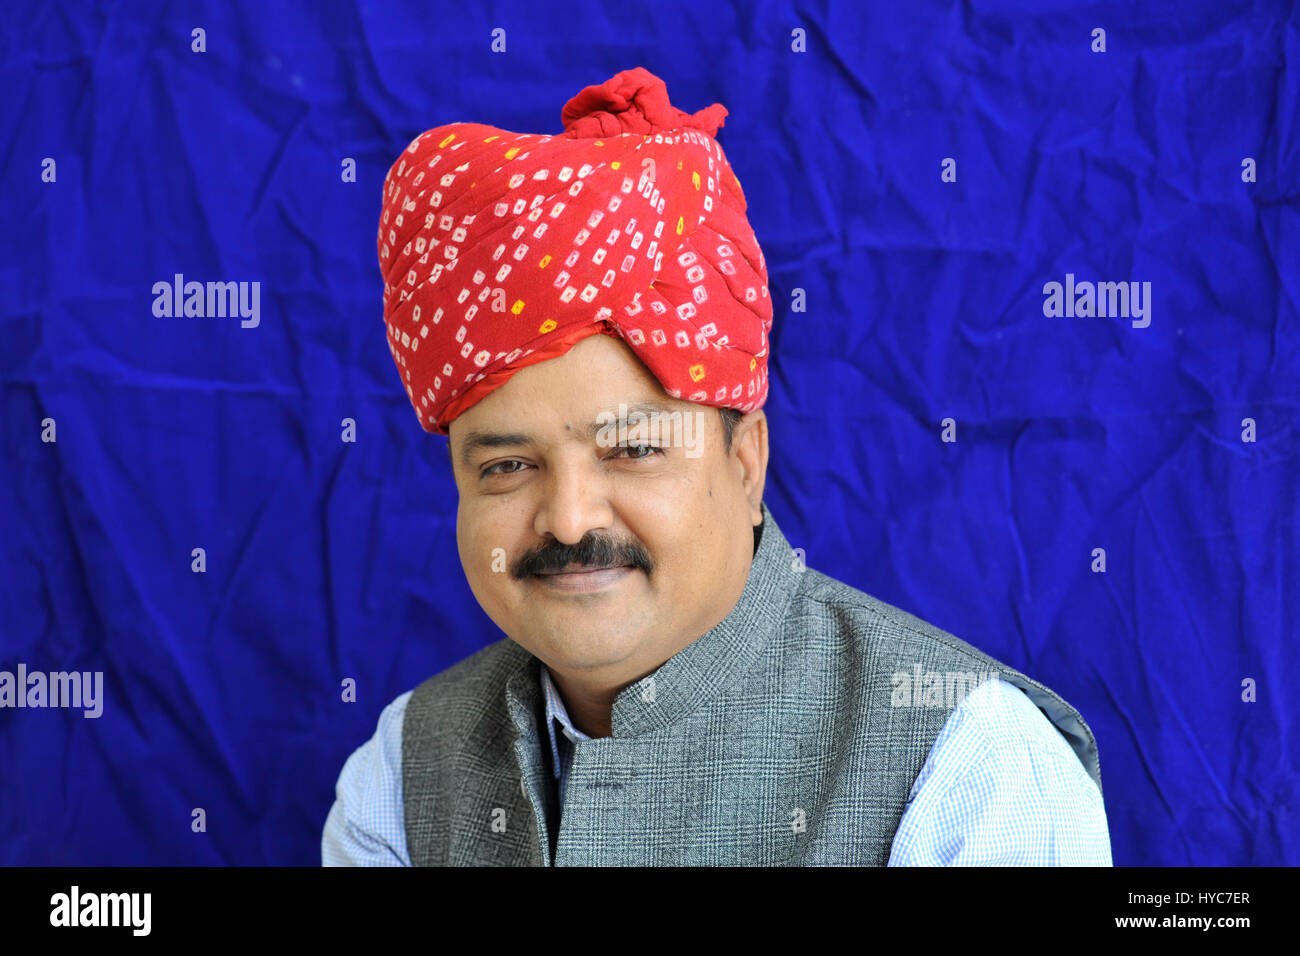 Portrait de mahesh jangid, Jaipur, Rajasthan, Inde, Asie Banque D'Images